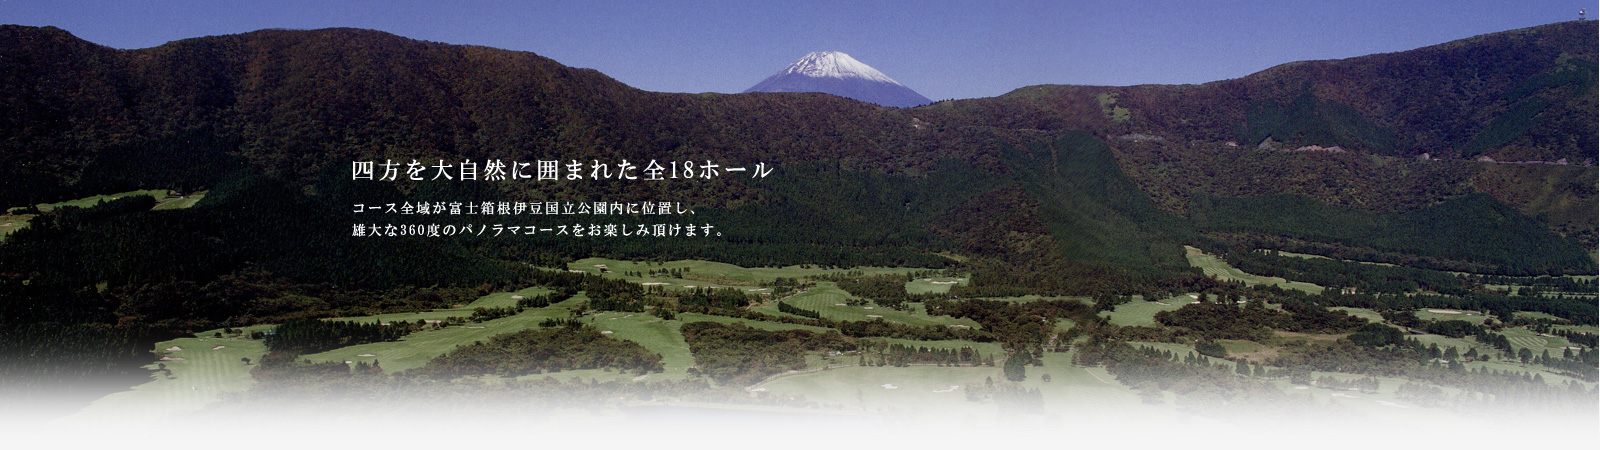 箱根カントリー倶楽部は、富士箱根伊豆国立公園に位置します。